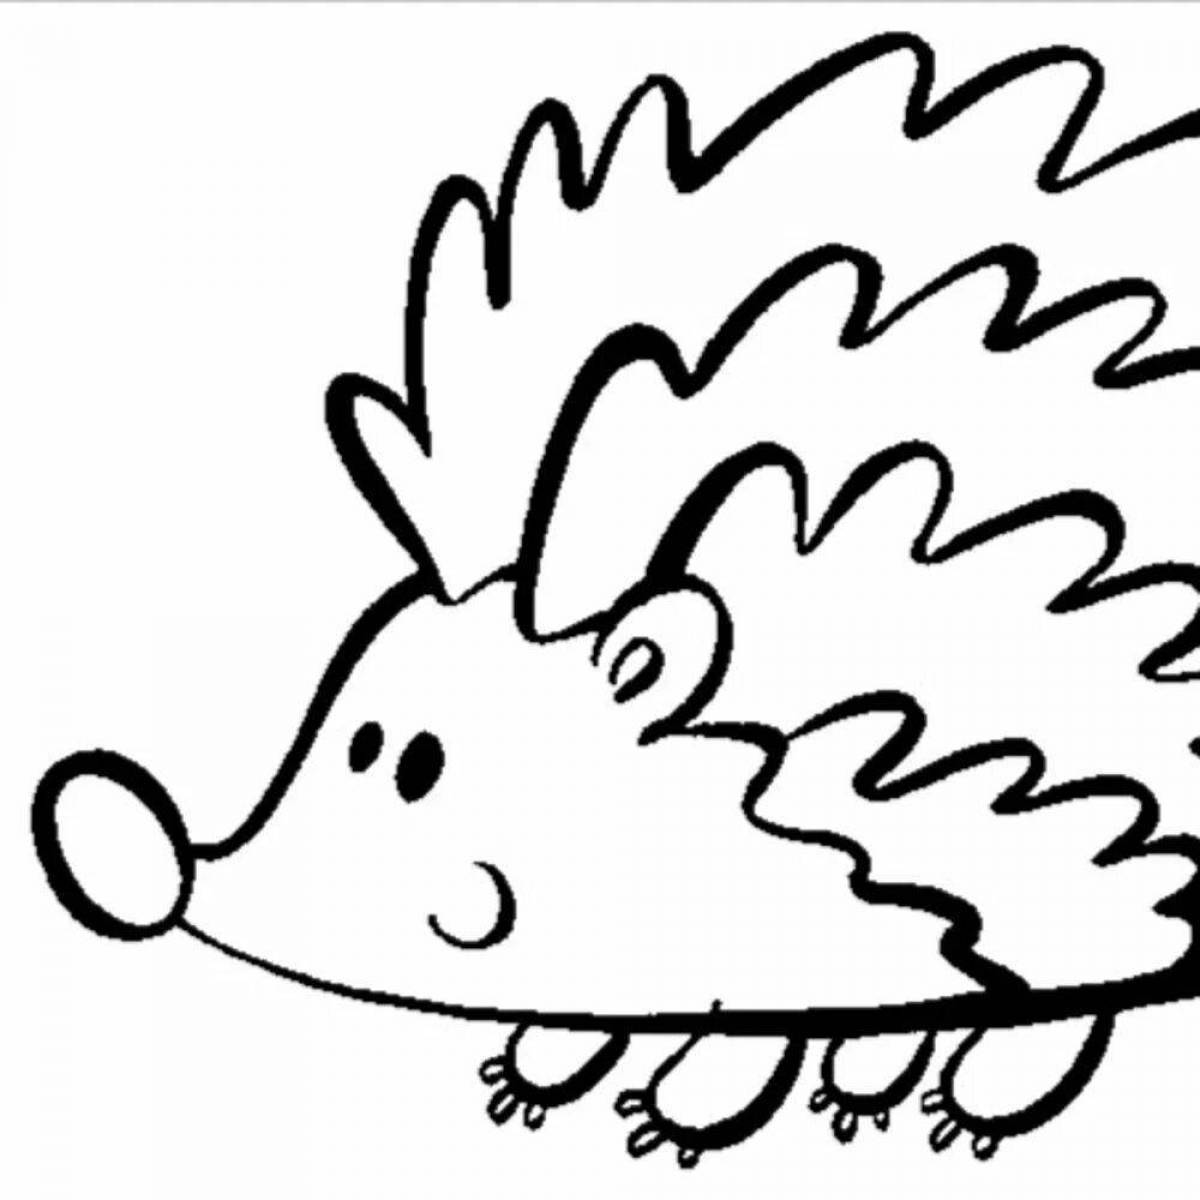 Adorable hedgehog drawing for kids